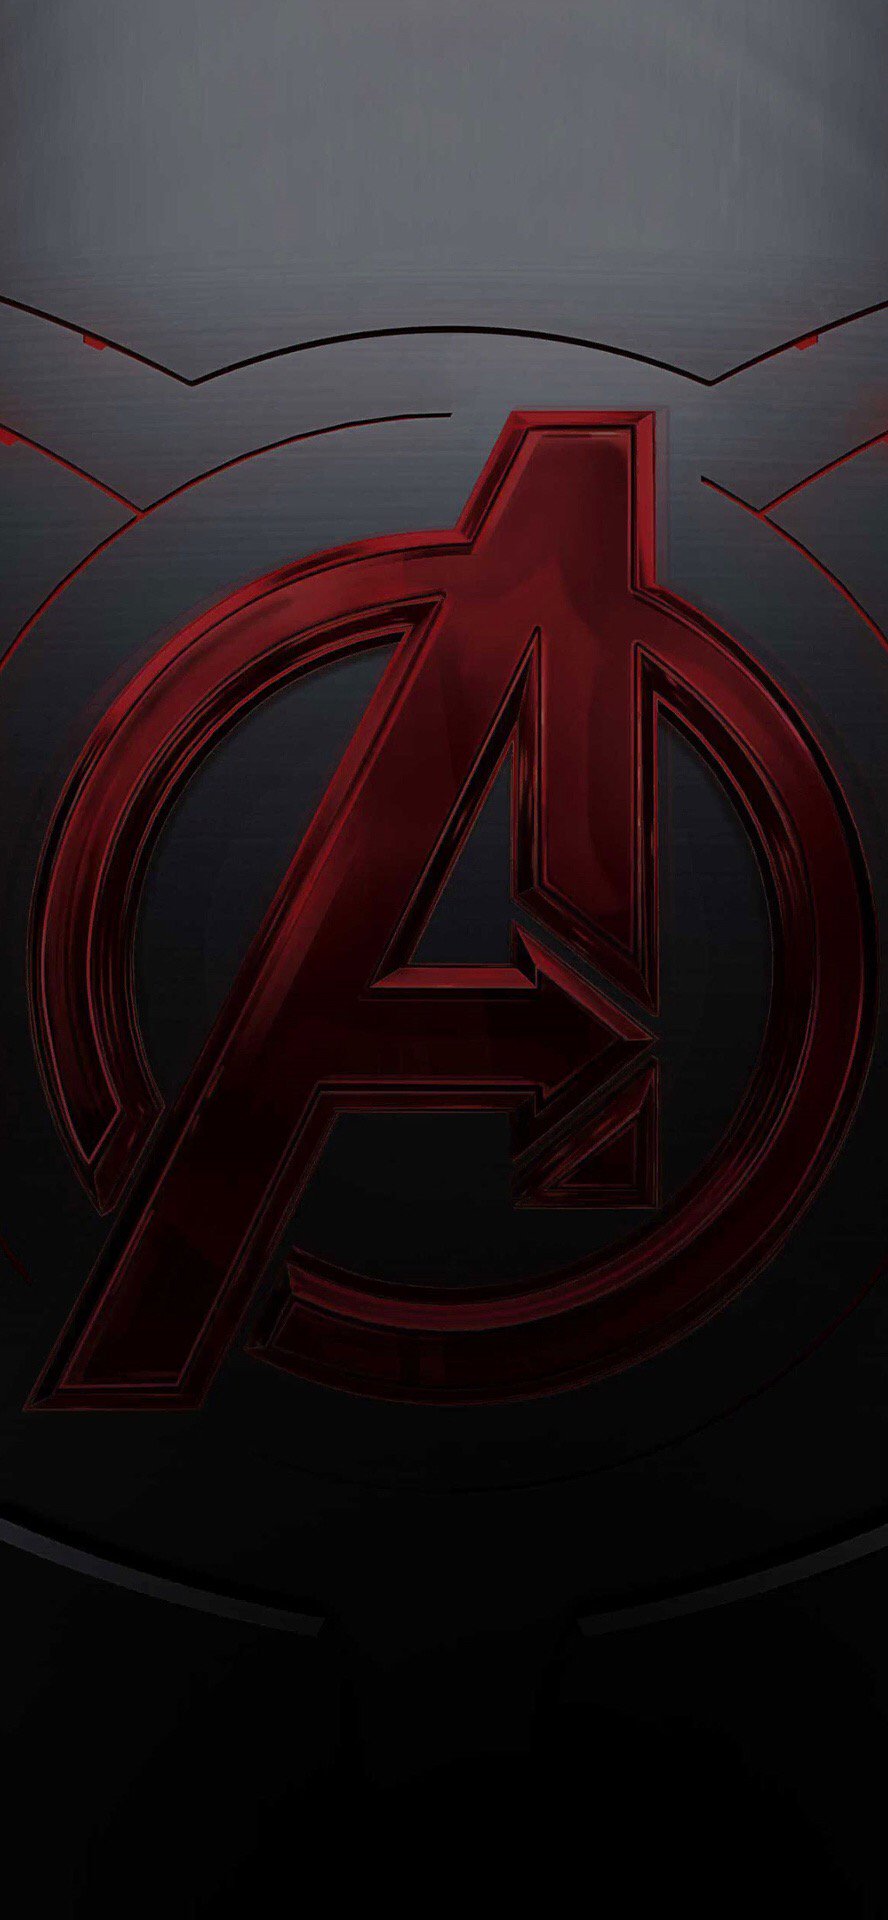 Avengers Endgame for Android, avengers logos HD phone wallpaper | Pxfuel